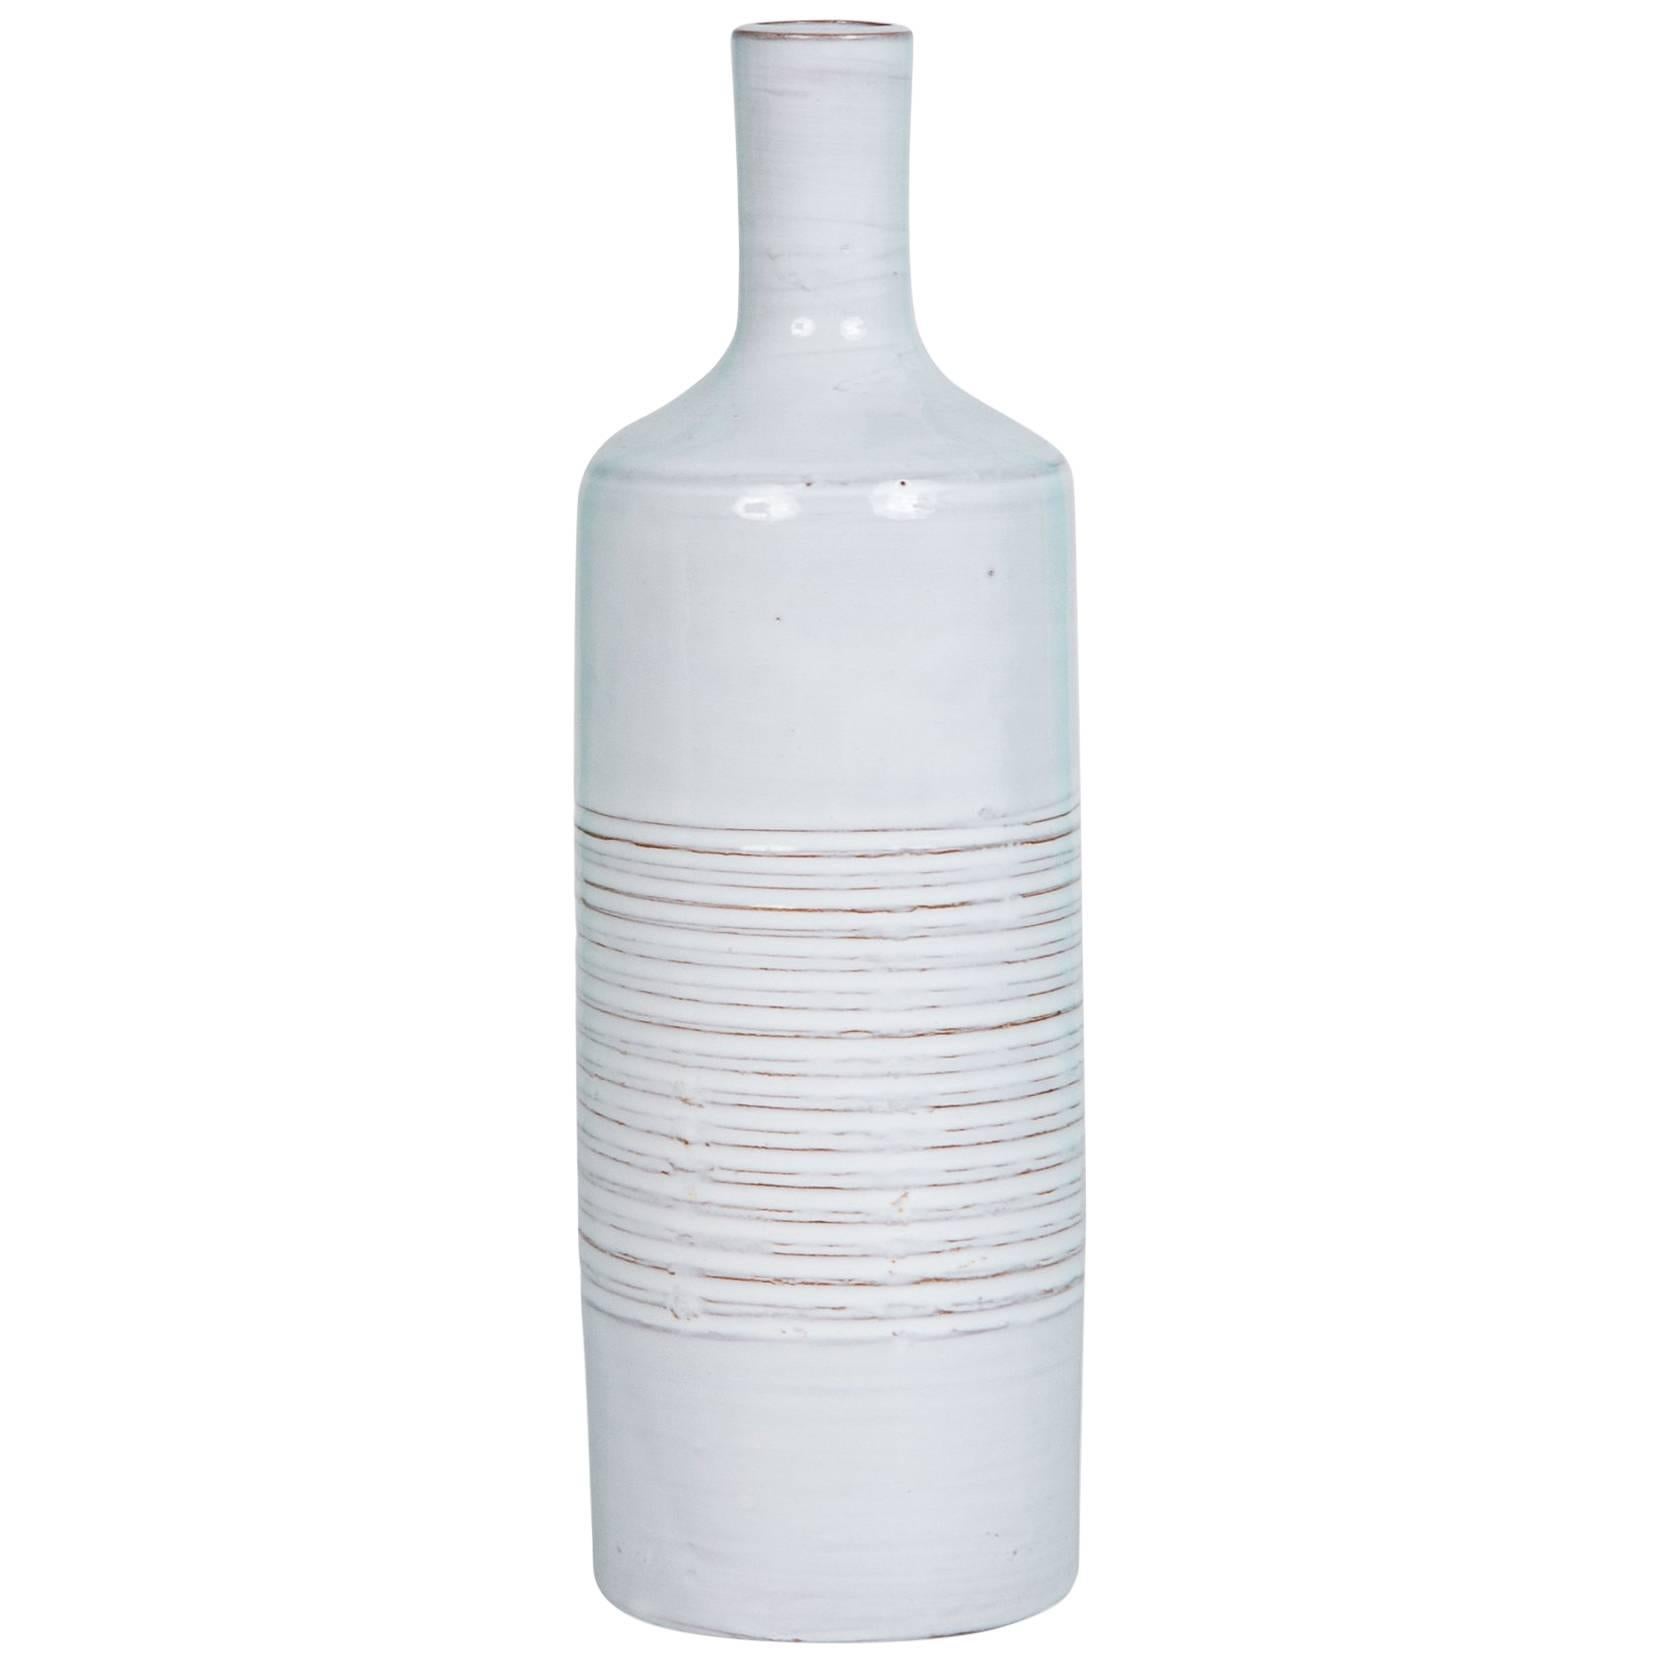 Grey-White Bottle Form Ceramic Vase by Les Argonautes For Sale